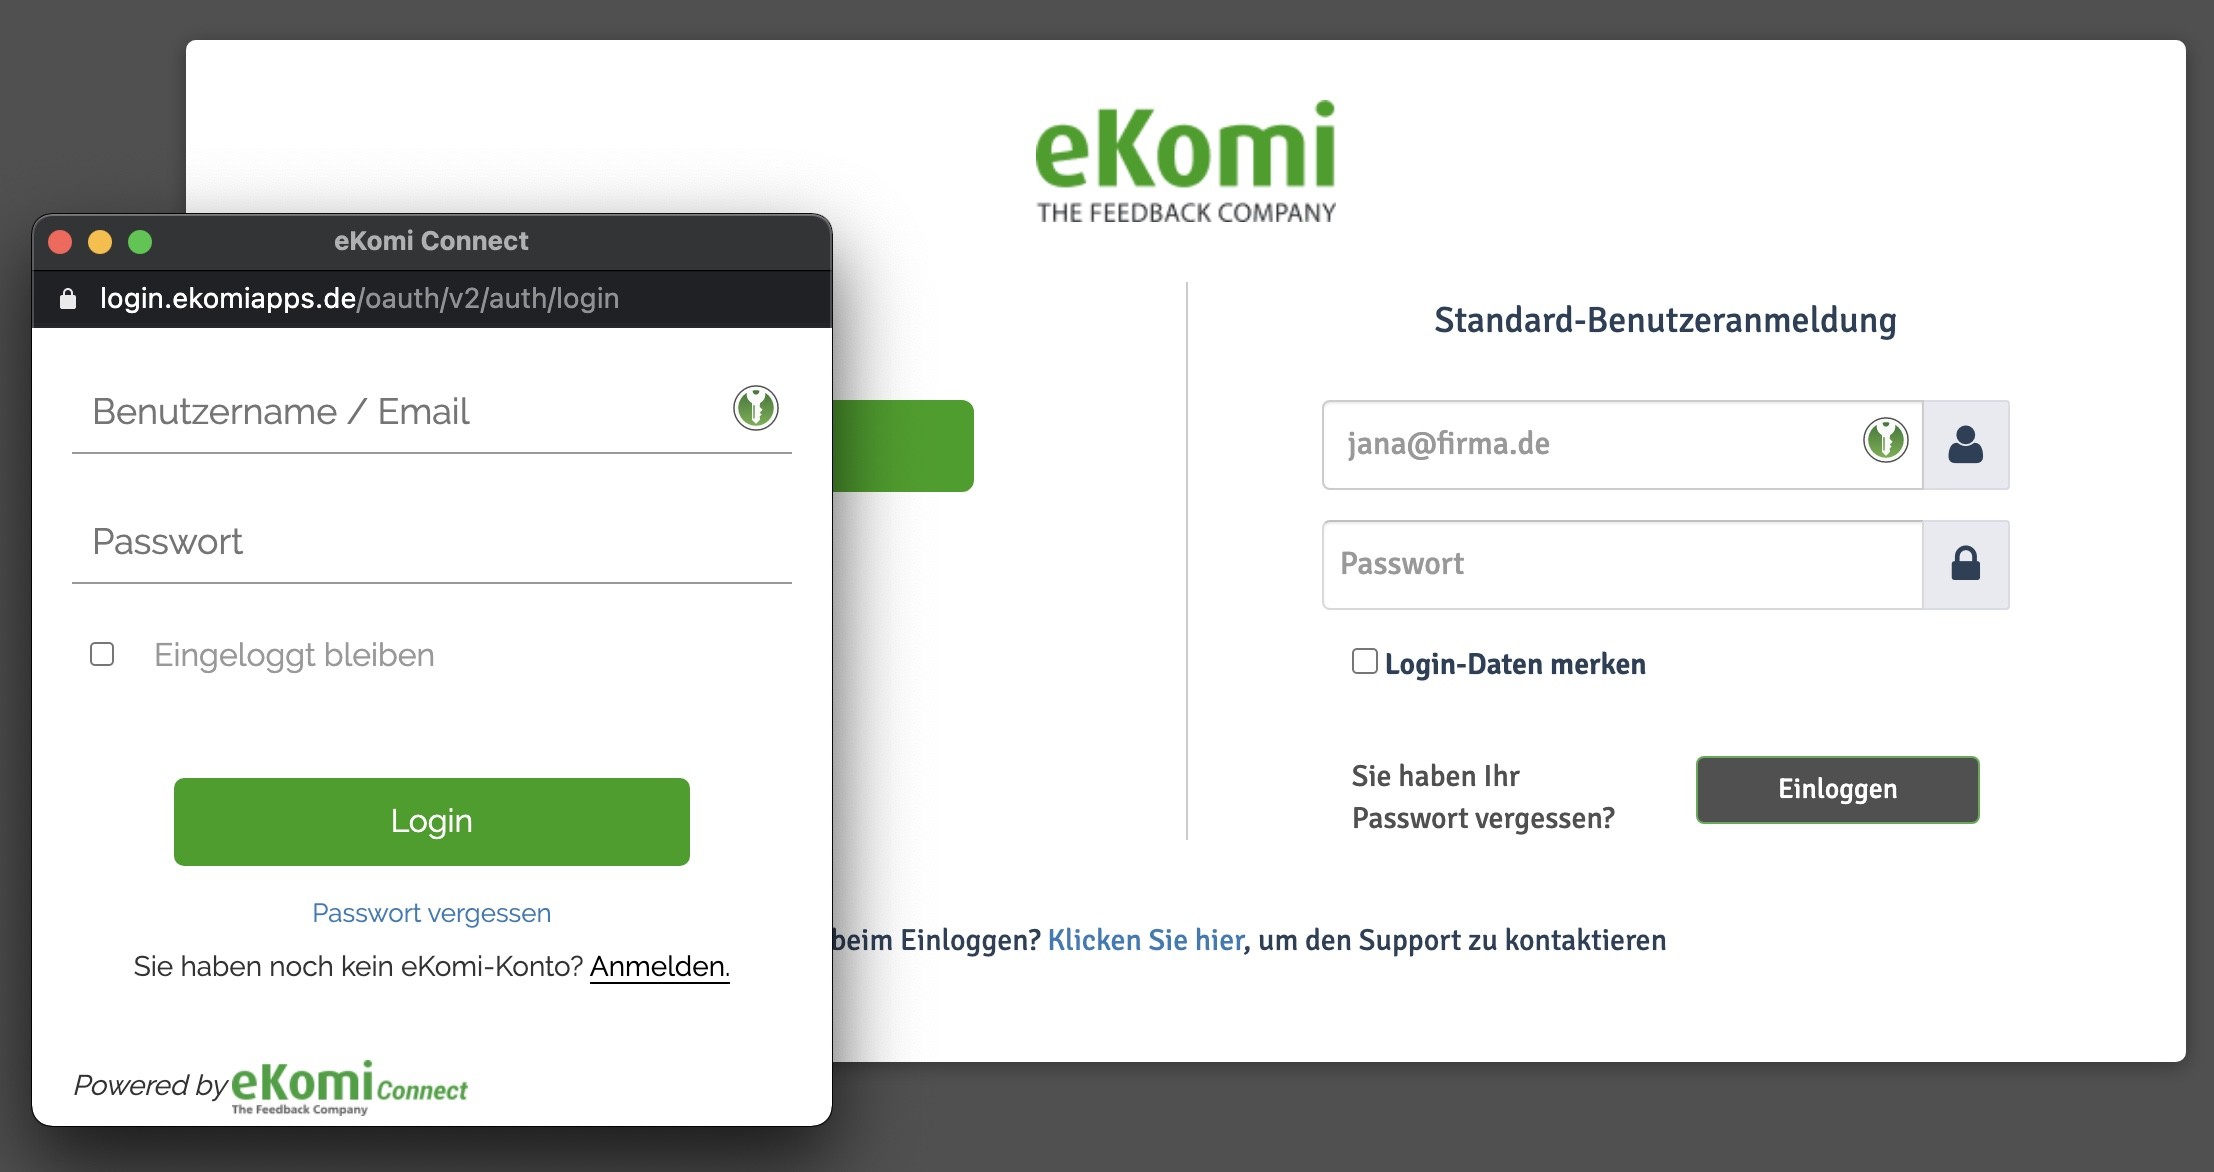 eKomi Badge einbinden - 2 - Manager Fenster